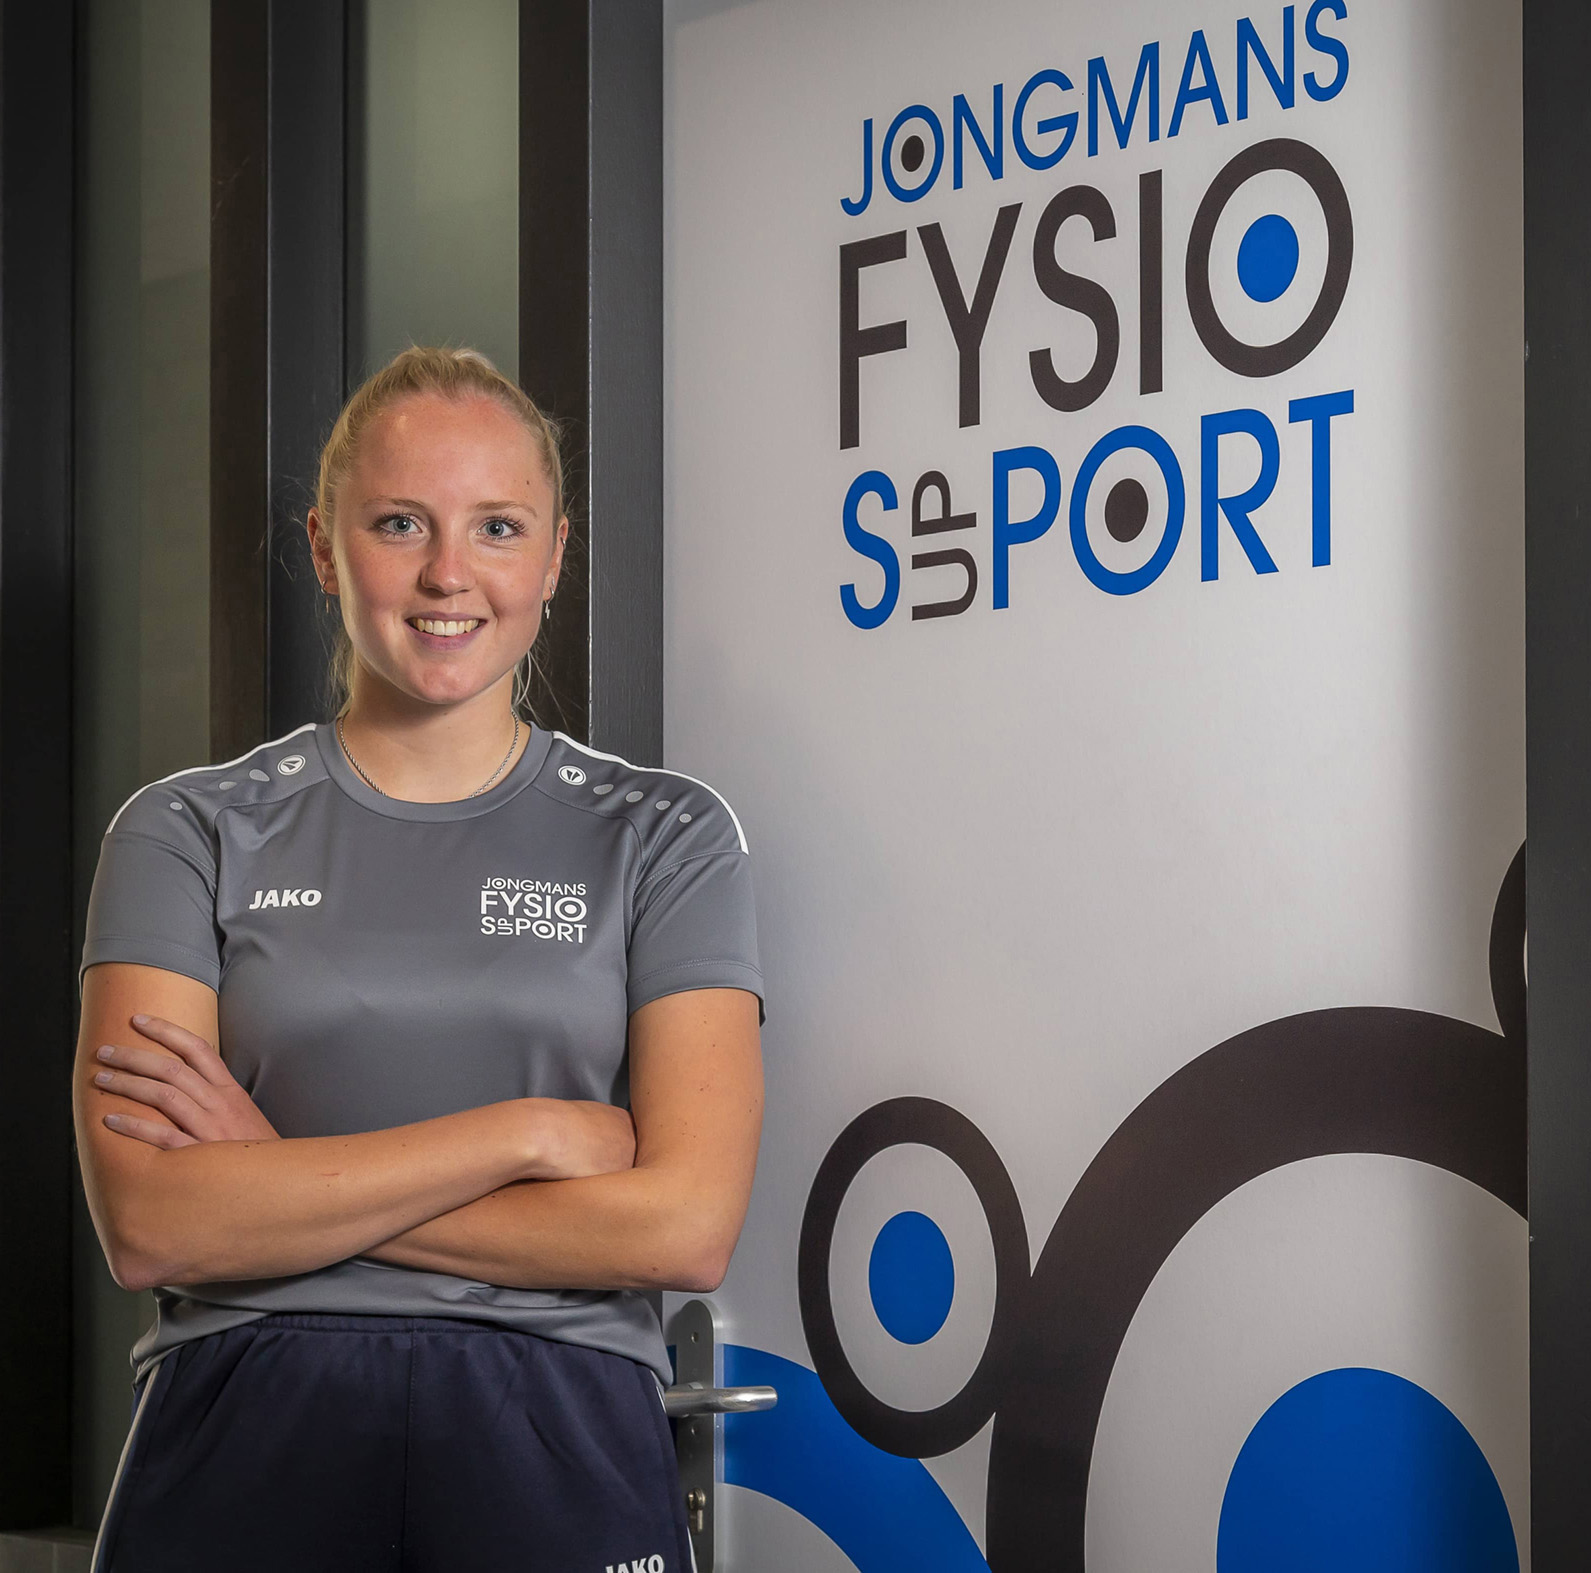 Femke Harsen Jongmans-FysioSupport Roosendaal